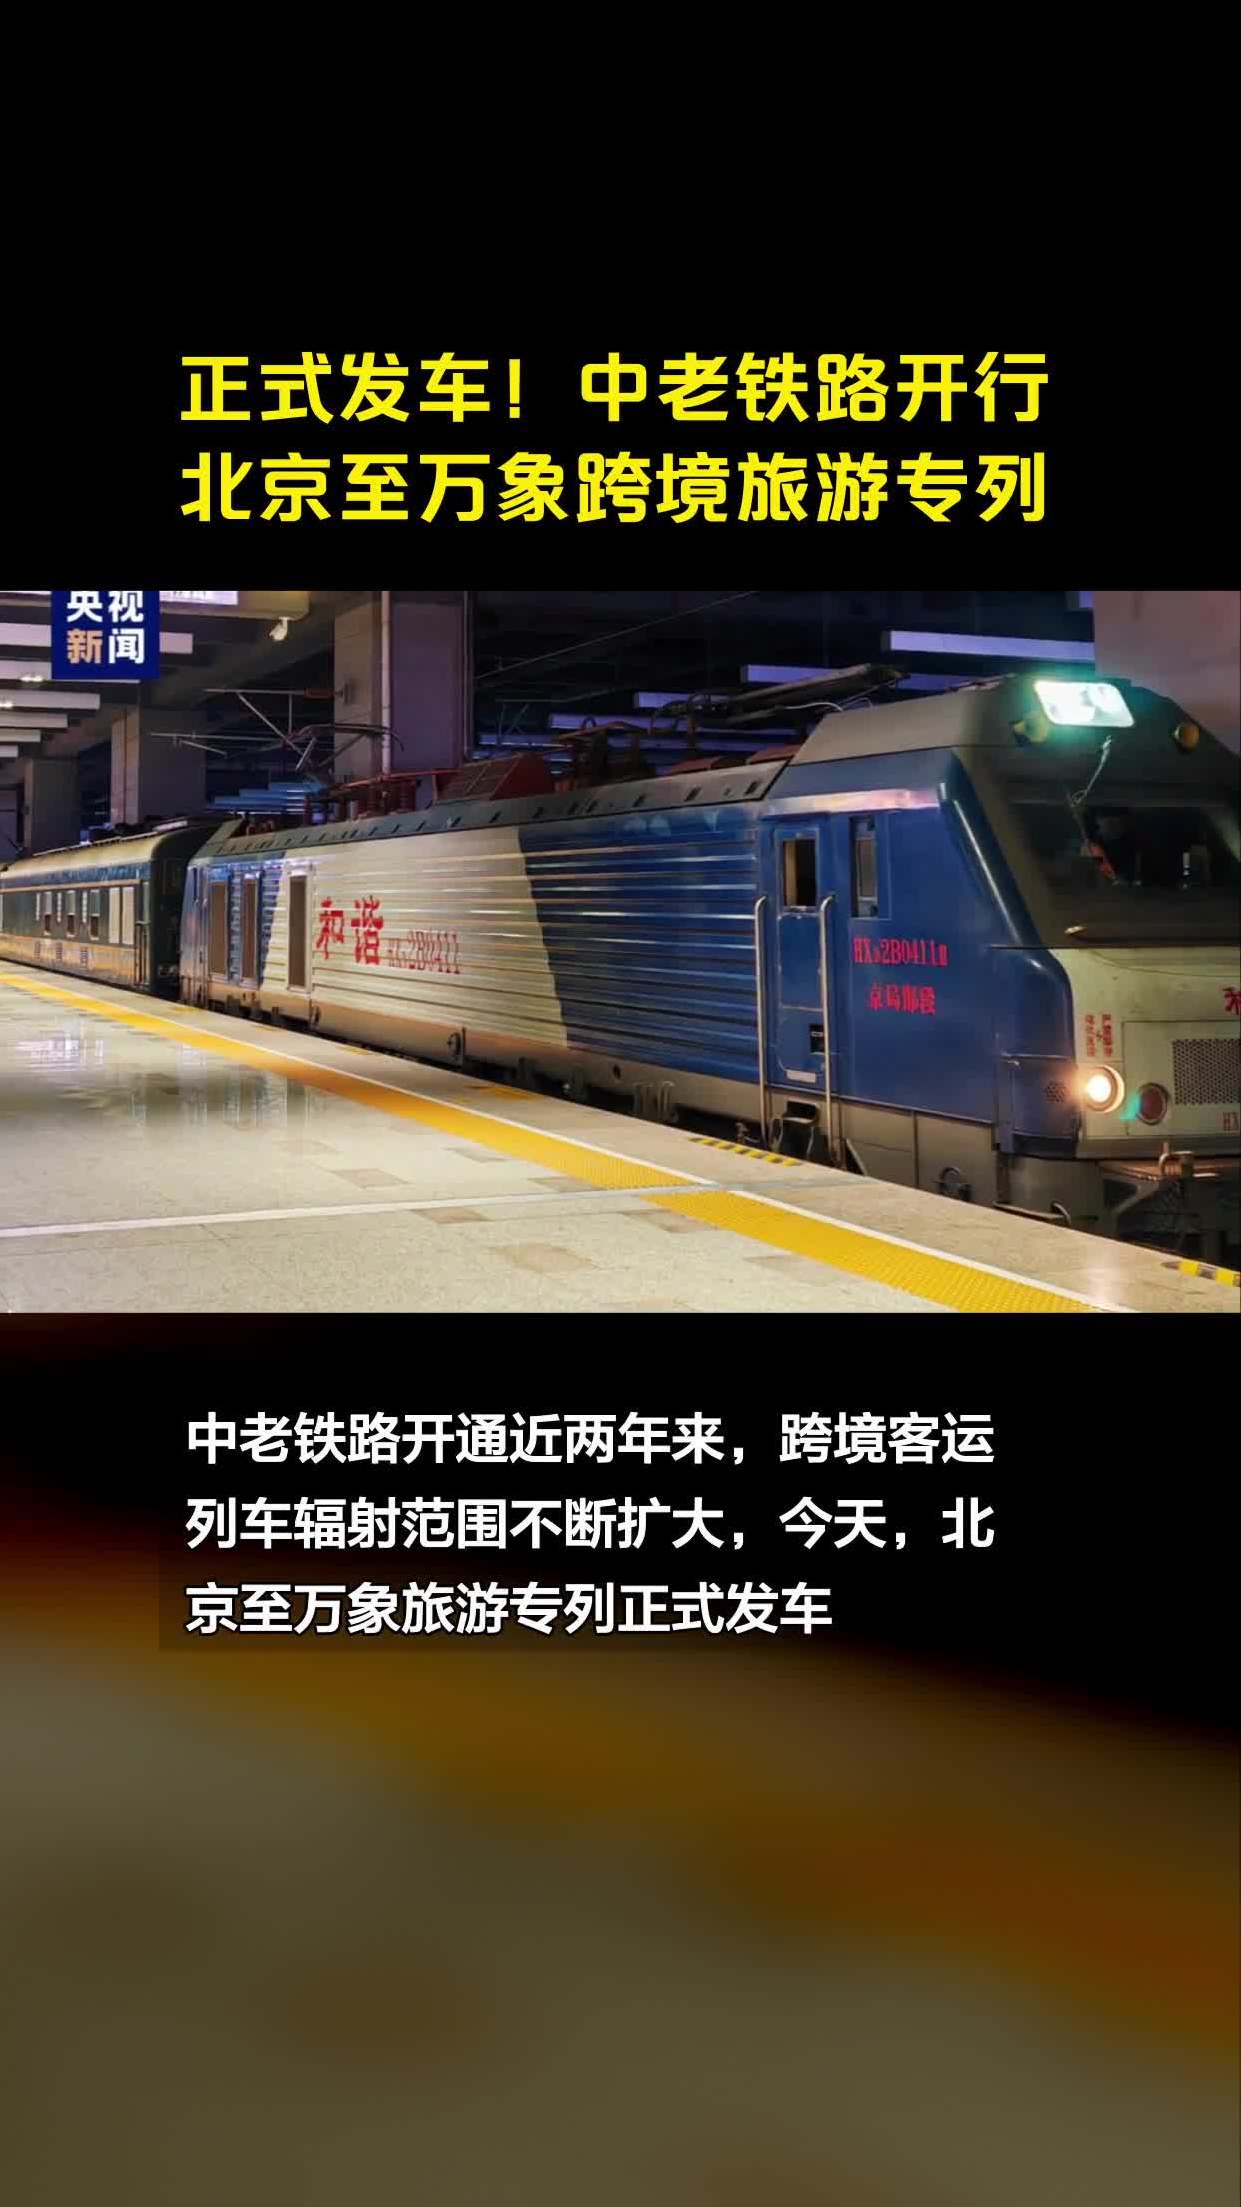 正式发车!中老铁路开行北京至万象跨境旅游专列